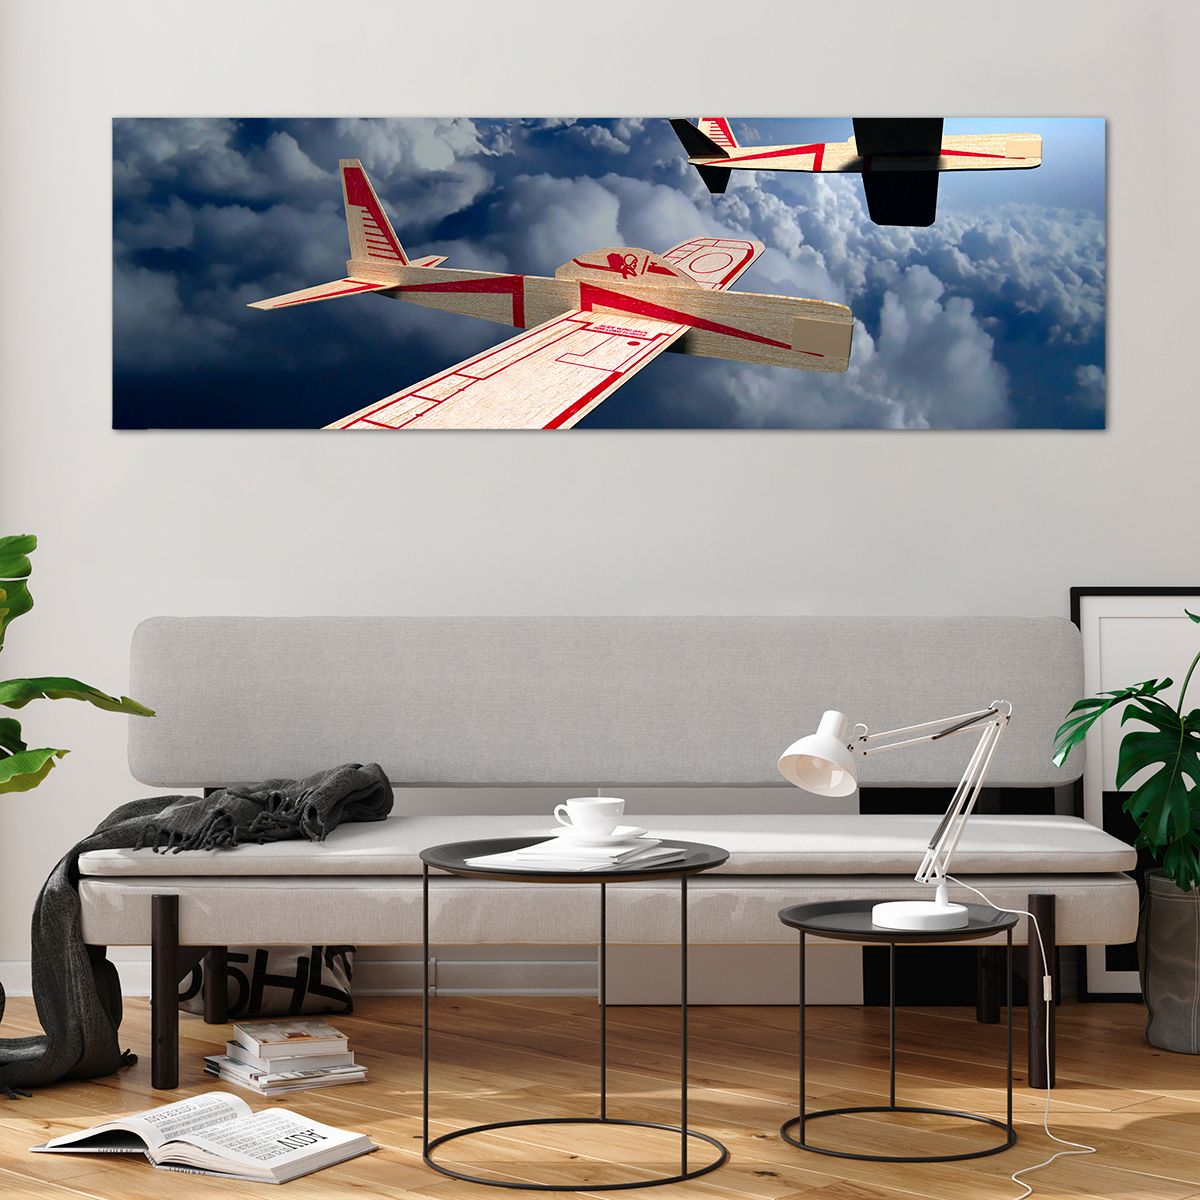 Üveg kép Repülőgép, Üveg kép Vitorlázó Repülőgép, Üveg kép Felhők, Üveg kép Repülőgép, Üveg kép Absztrakció